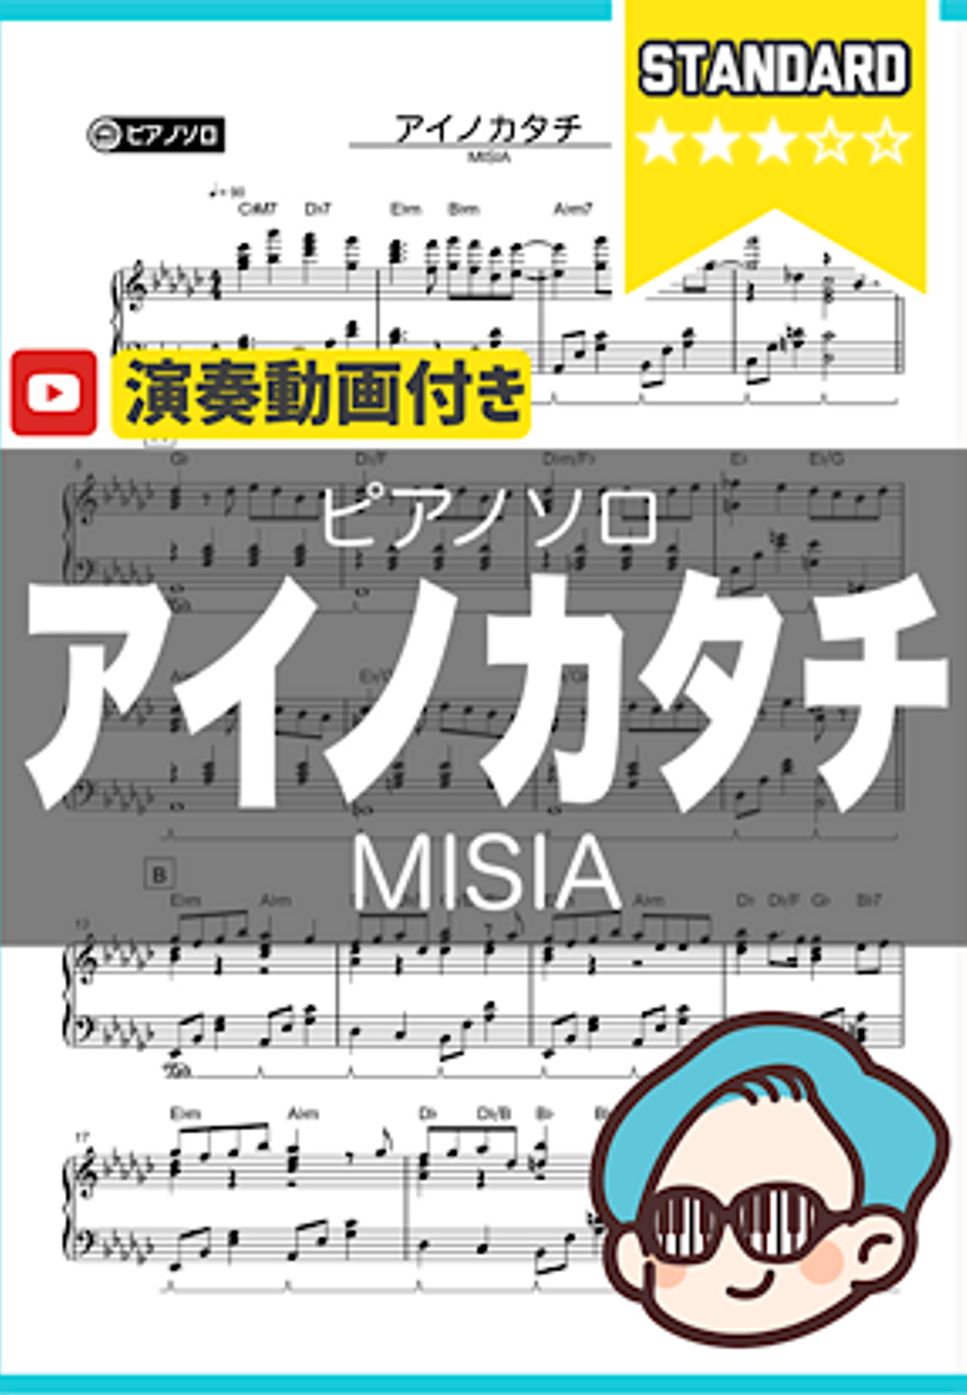 MISIA - アイノカタチ by シータピアノ